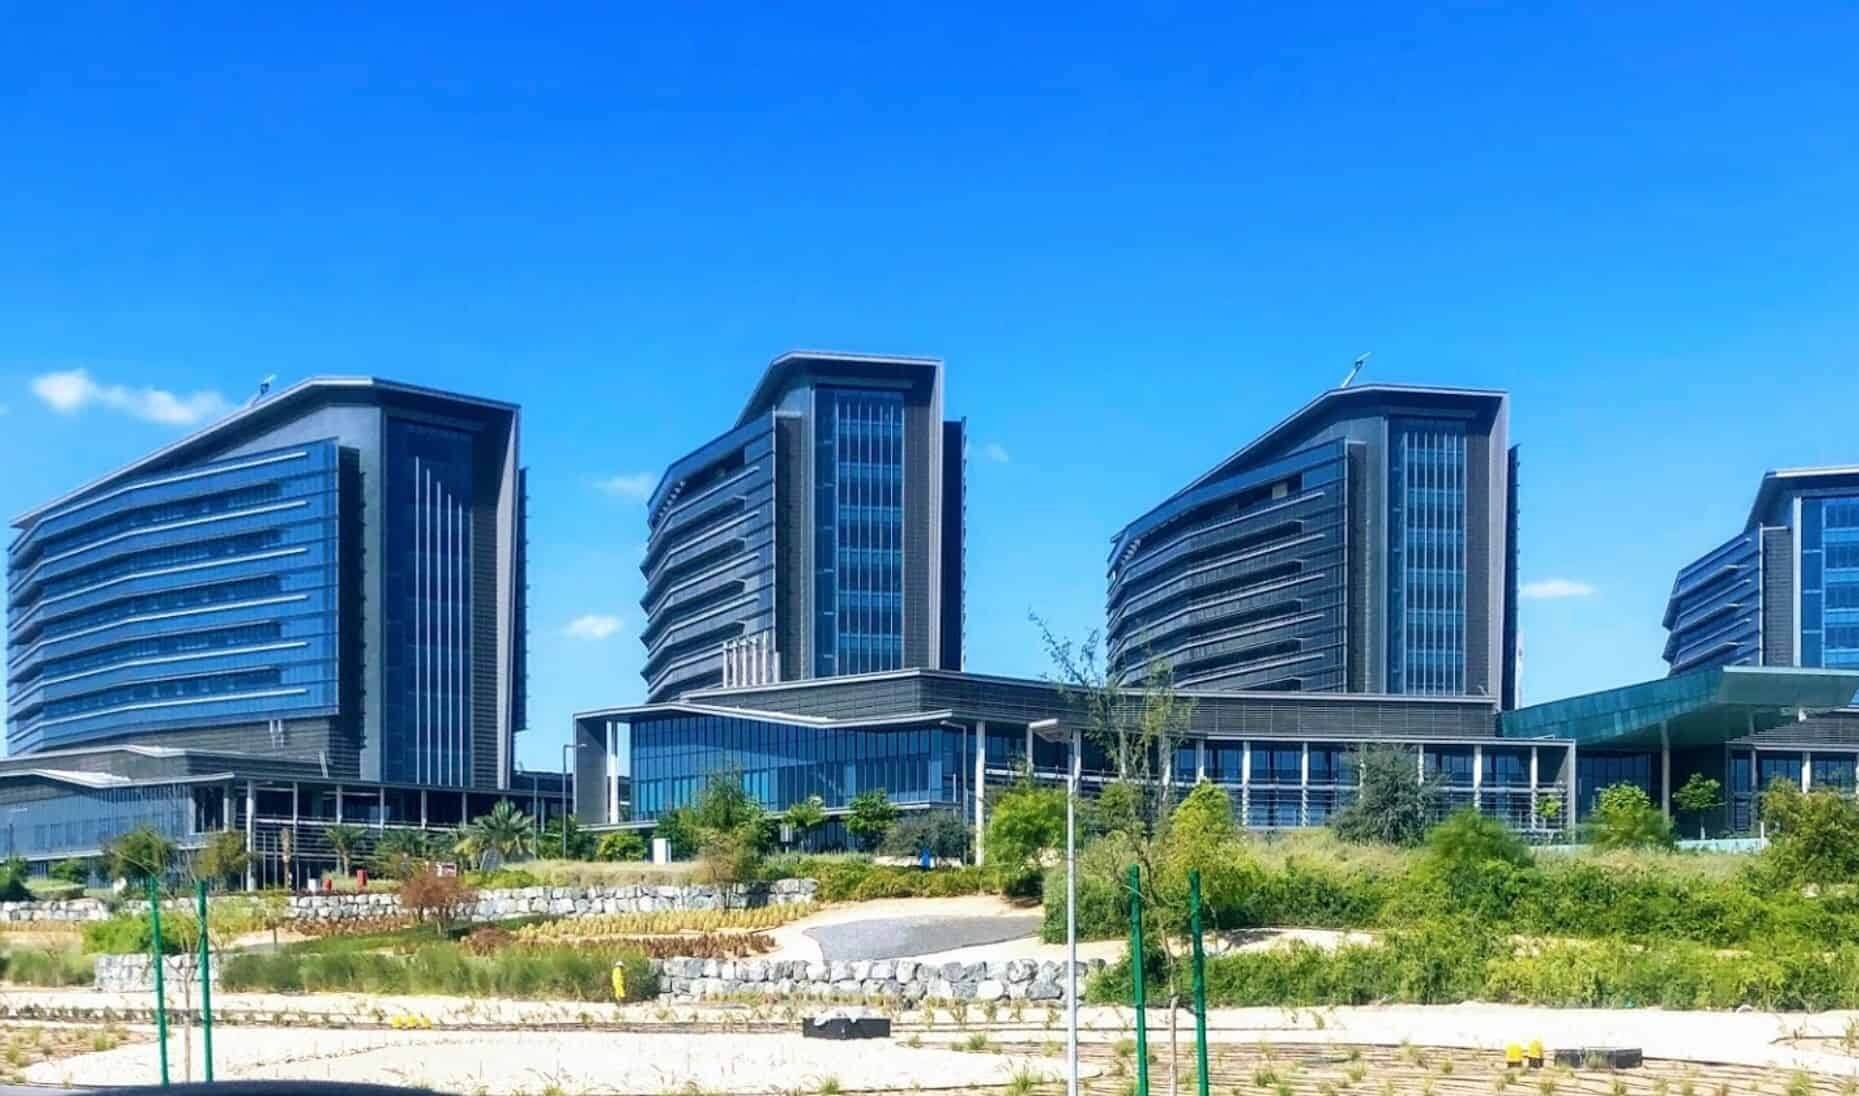 Shaikh Shakhbout Medical City in Abu Dhabi